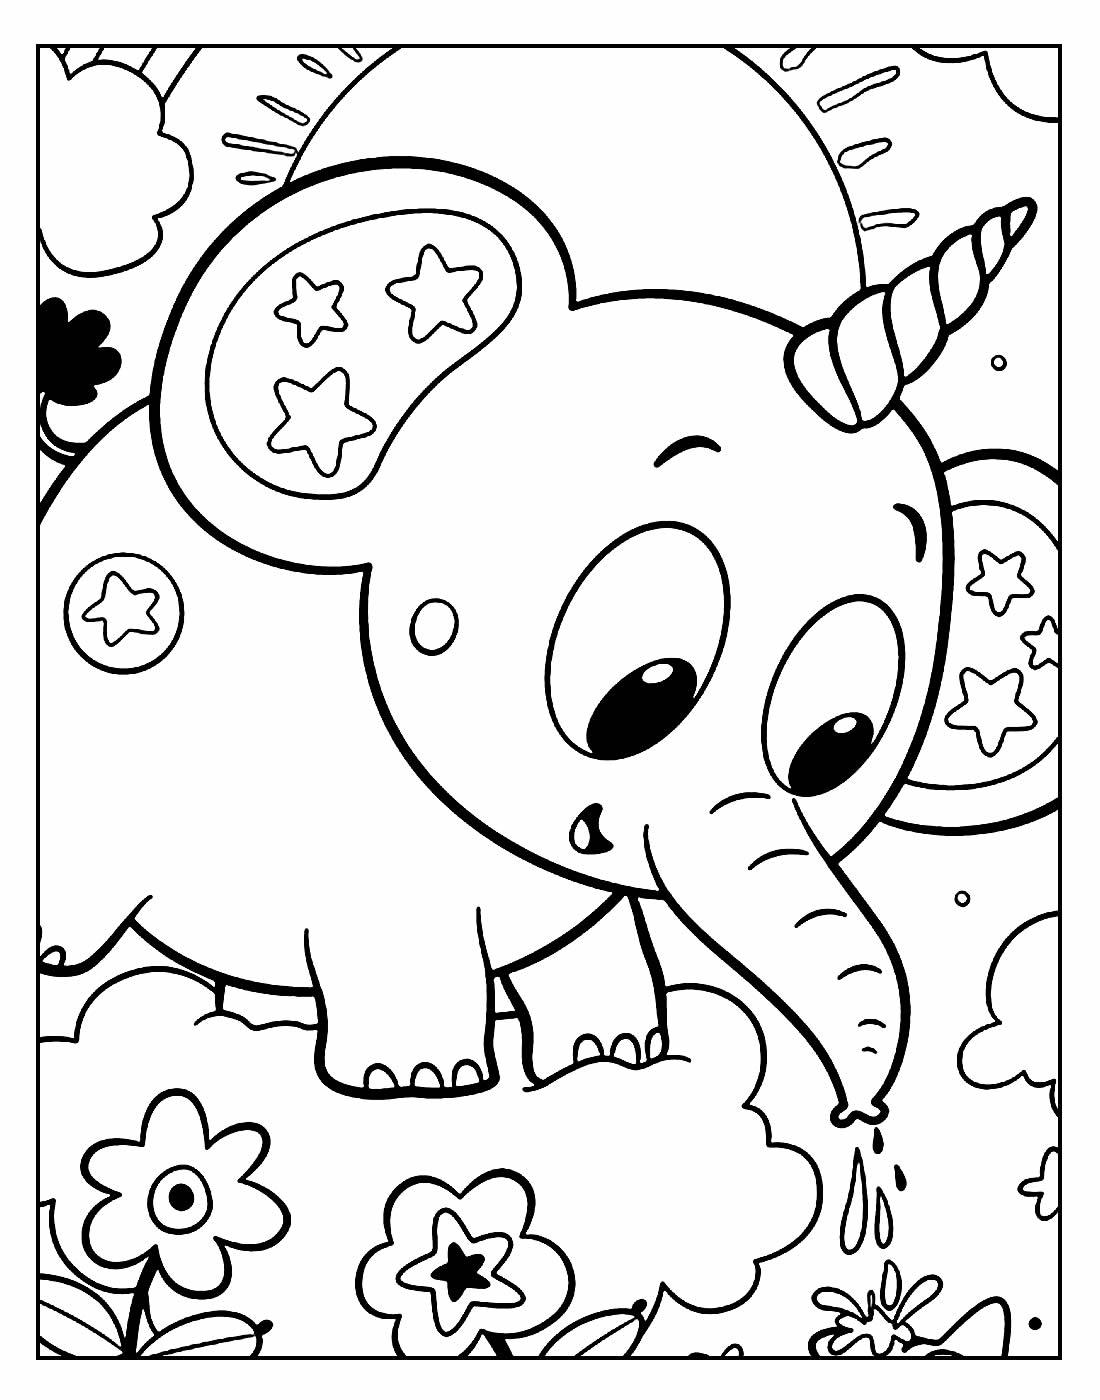 Desenho de Elefante para colorir